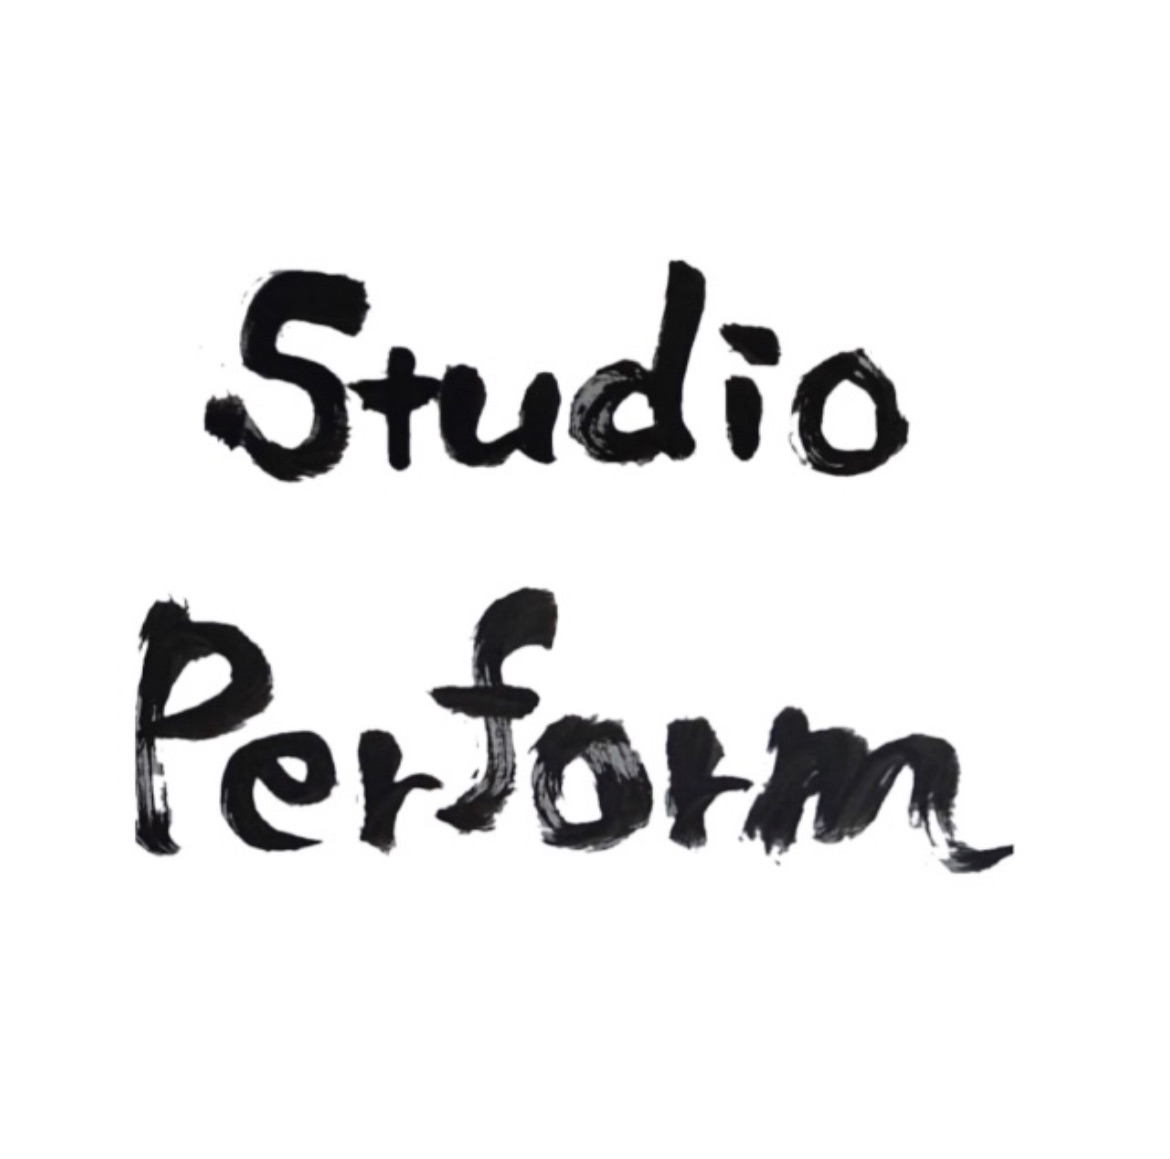 Studio Perform